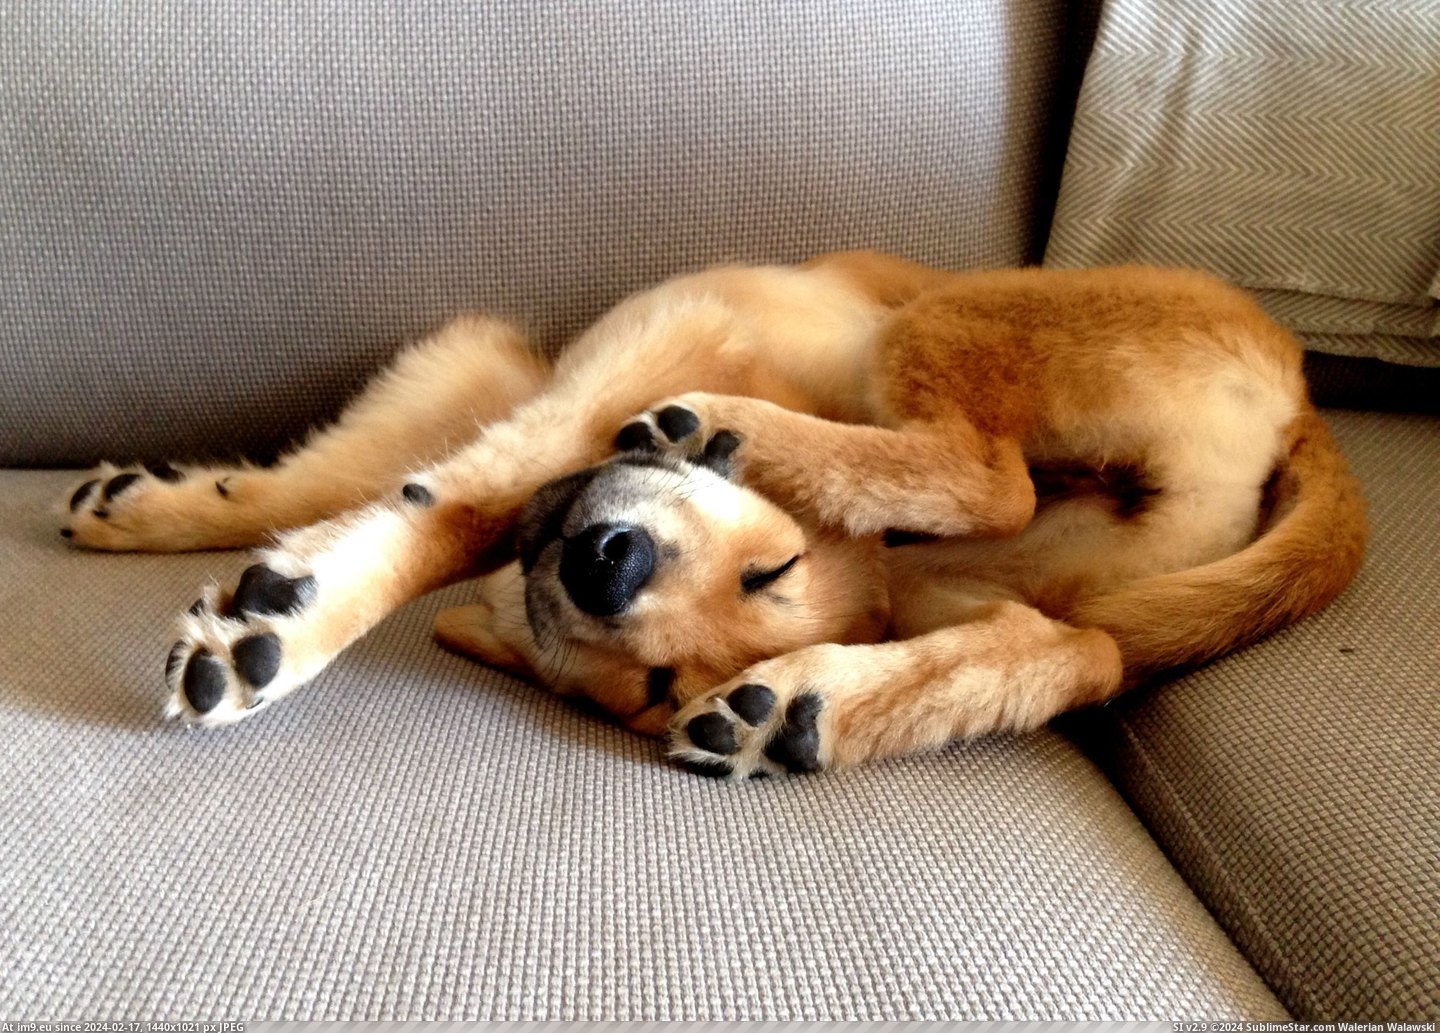 #Puppy  #Pretzel [Aww] Puppy pretzel Pic. (Obraz z album My r/AWW favs))